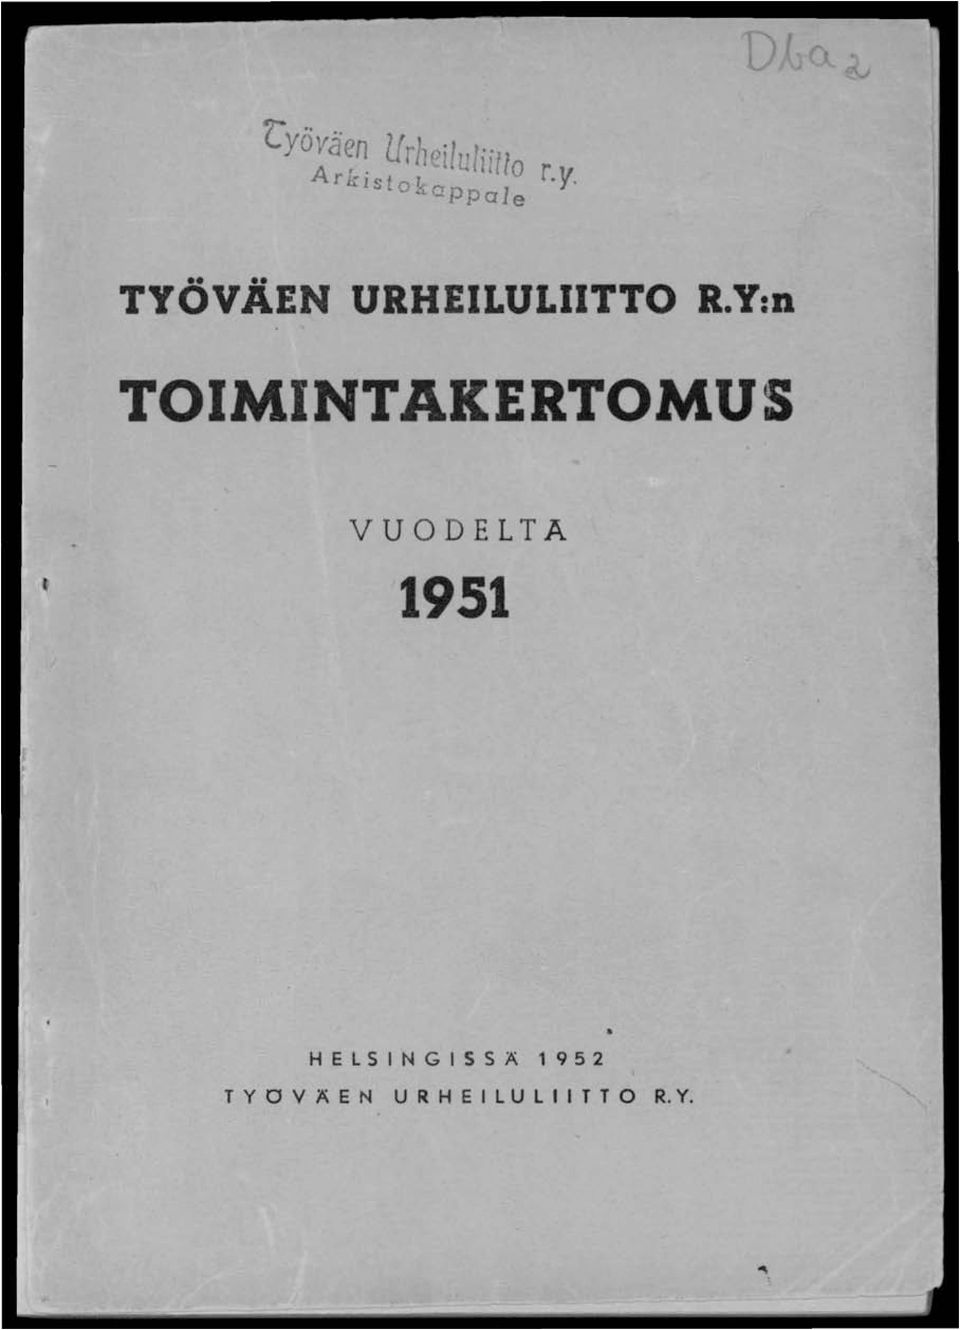 Y:n TOIMINTAKERTOMUS VUODELTA 1951